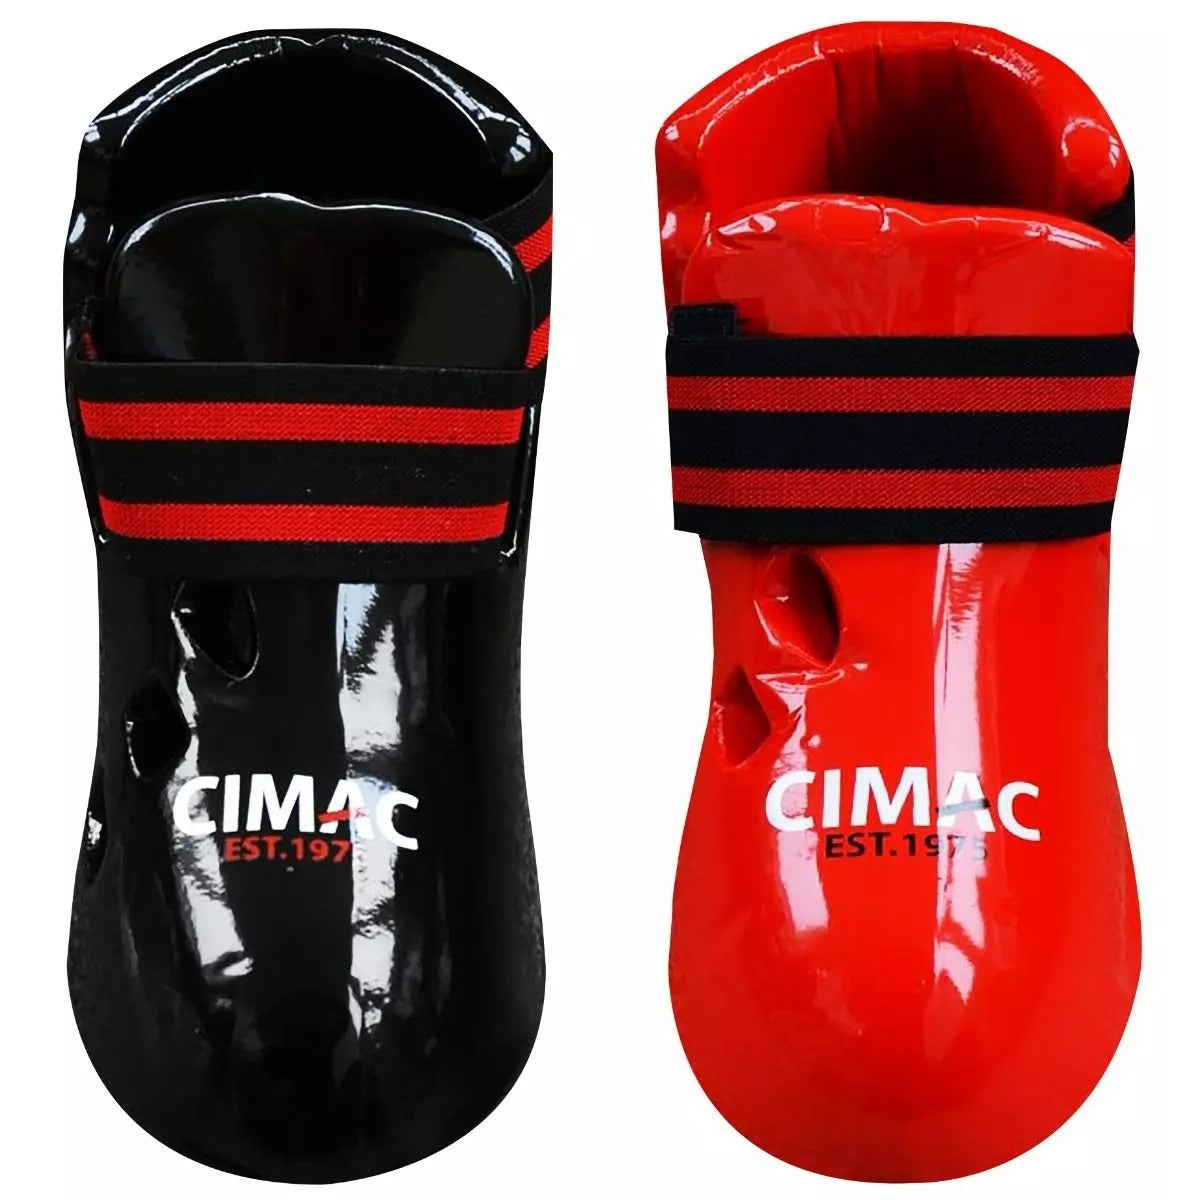 Cimac Dipped Foam Foot Guards Martial Arts Protectors